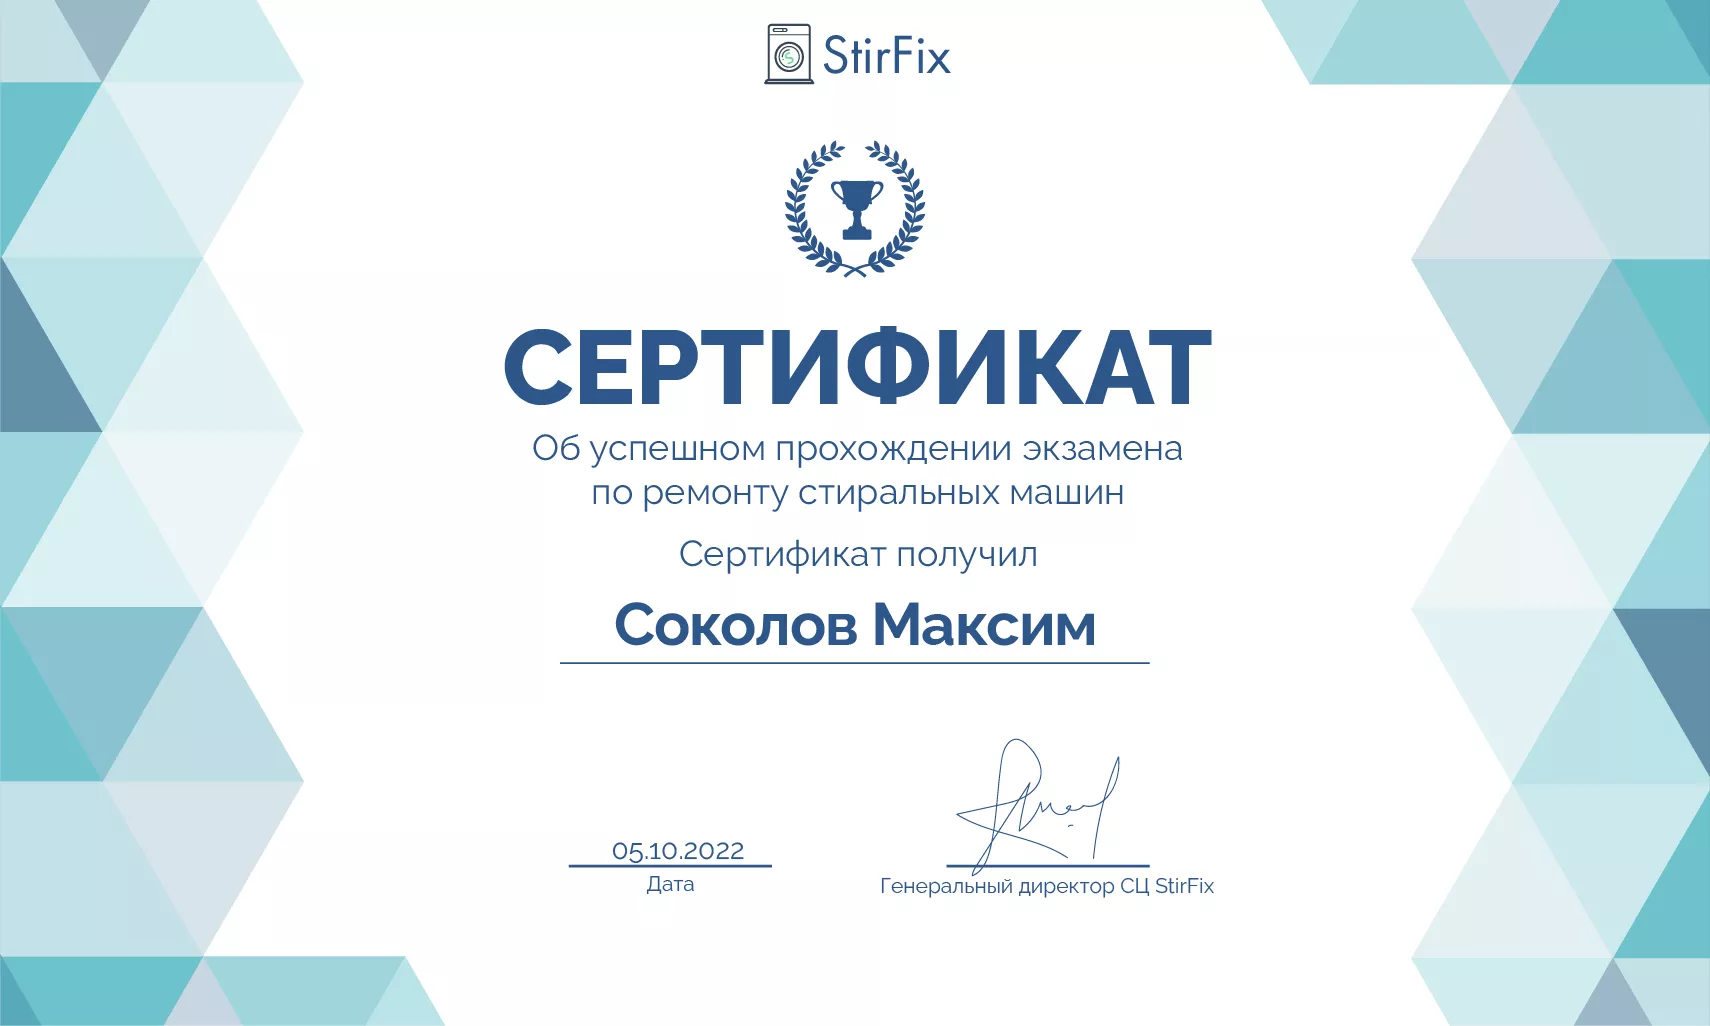 Соколов Максим сертификат мастера по ремонту стиральных машин